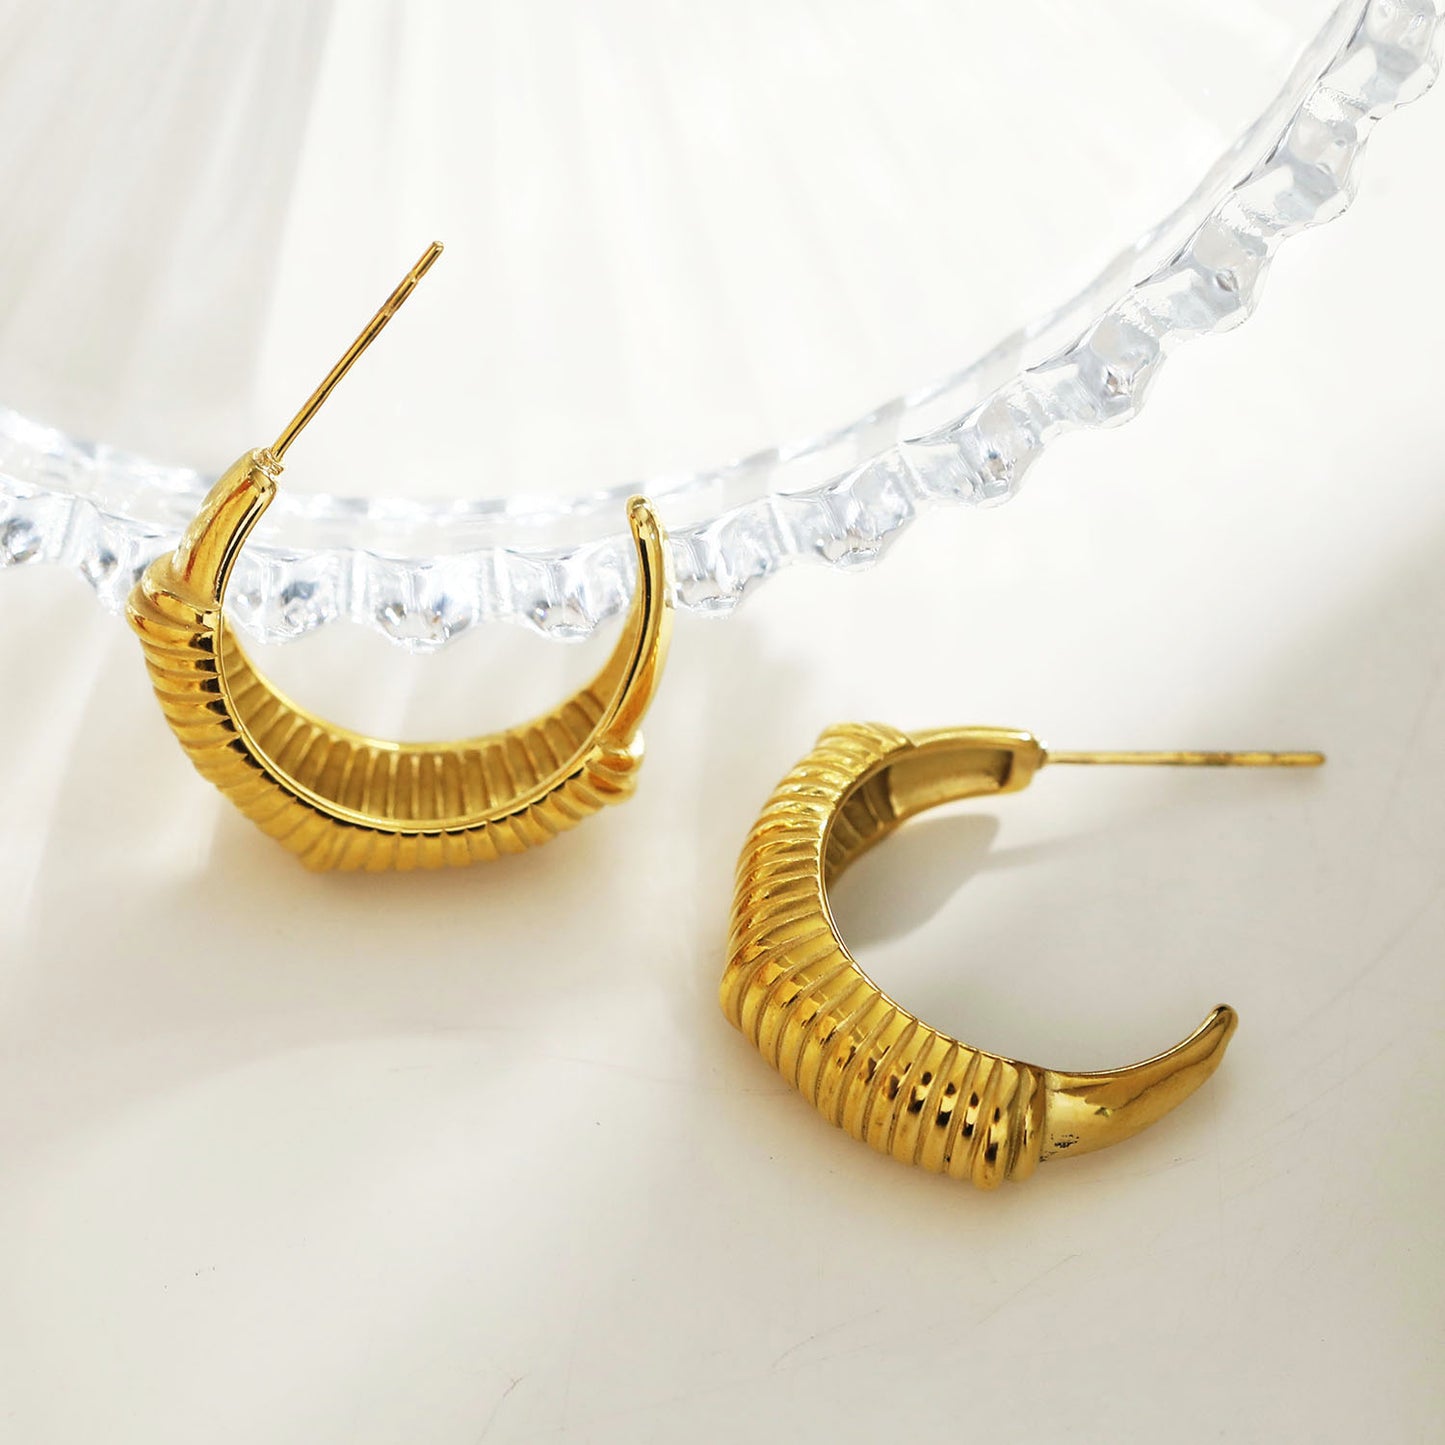 DOLCEDA Art Deco Inspired Geometric Hoop Gold Earrings